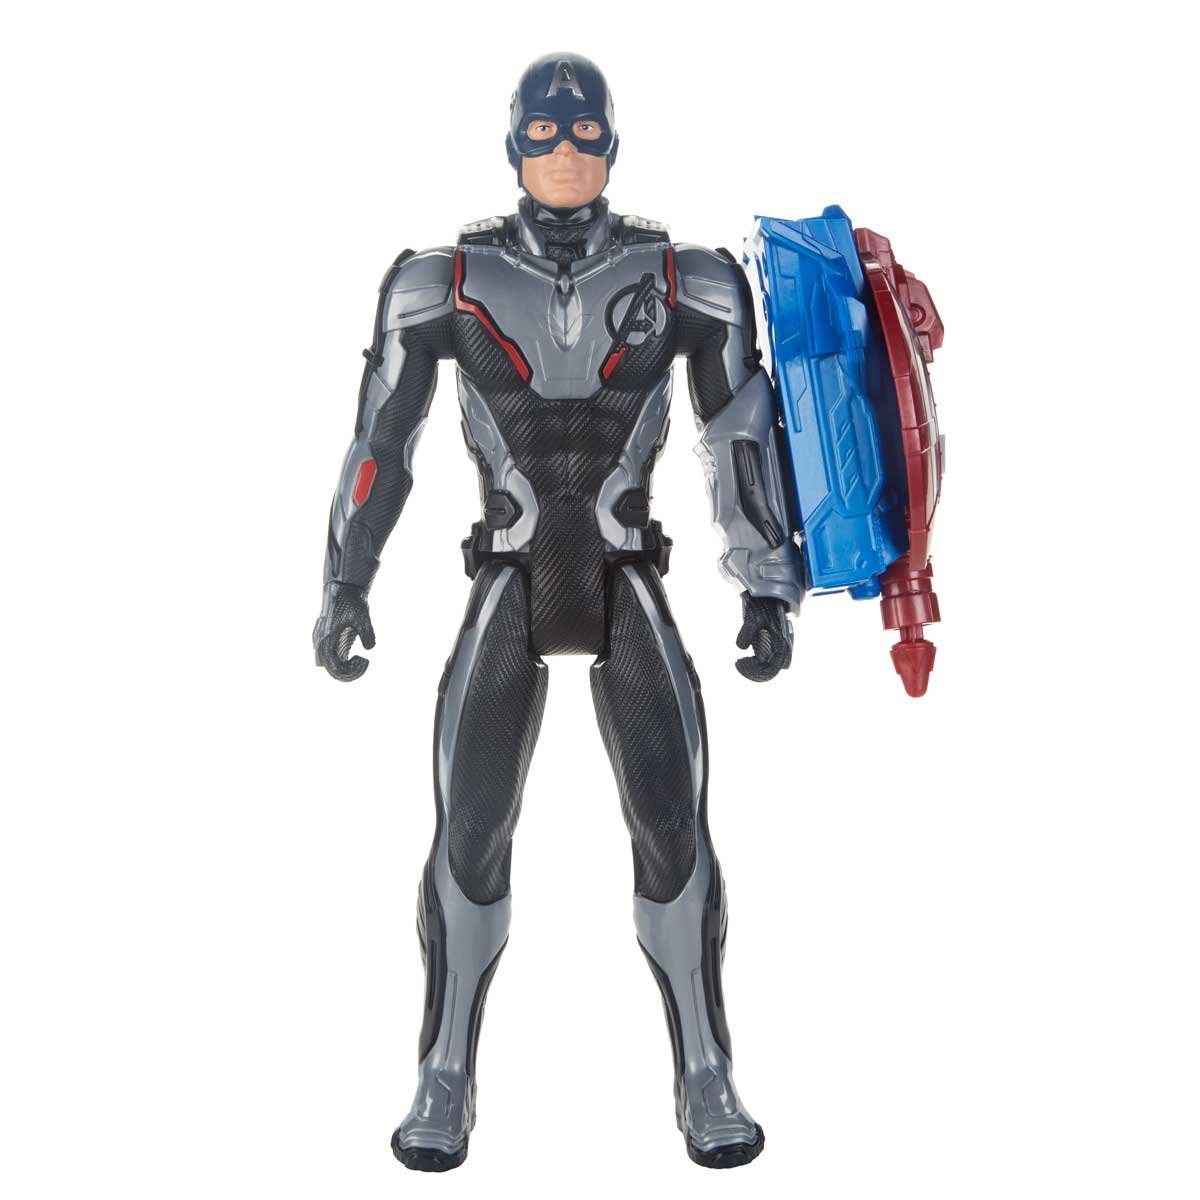 Figura Titan Hero Power Fx Avengers Endgame Capitán América Hasbro